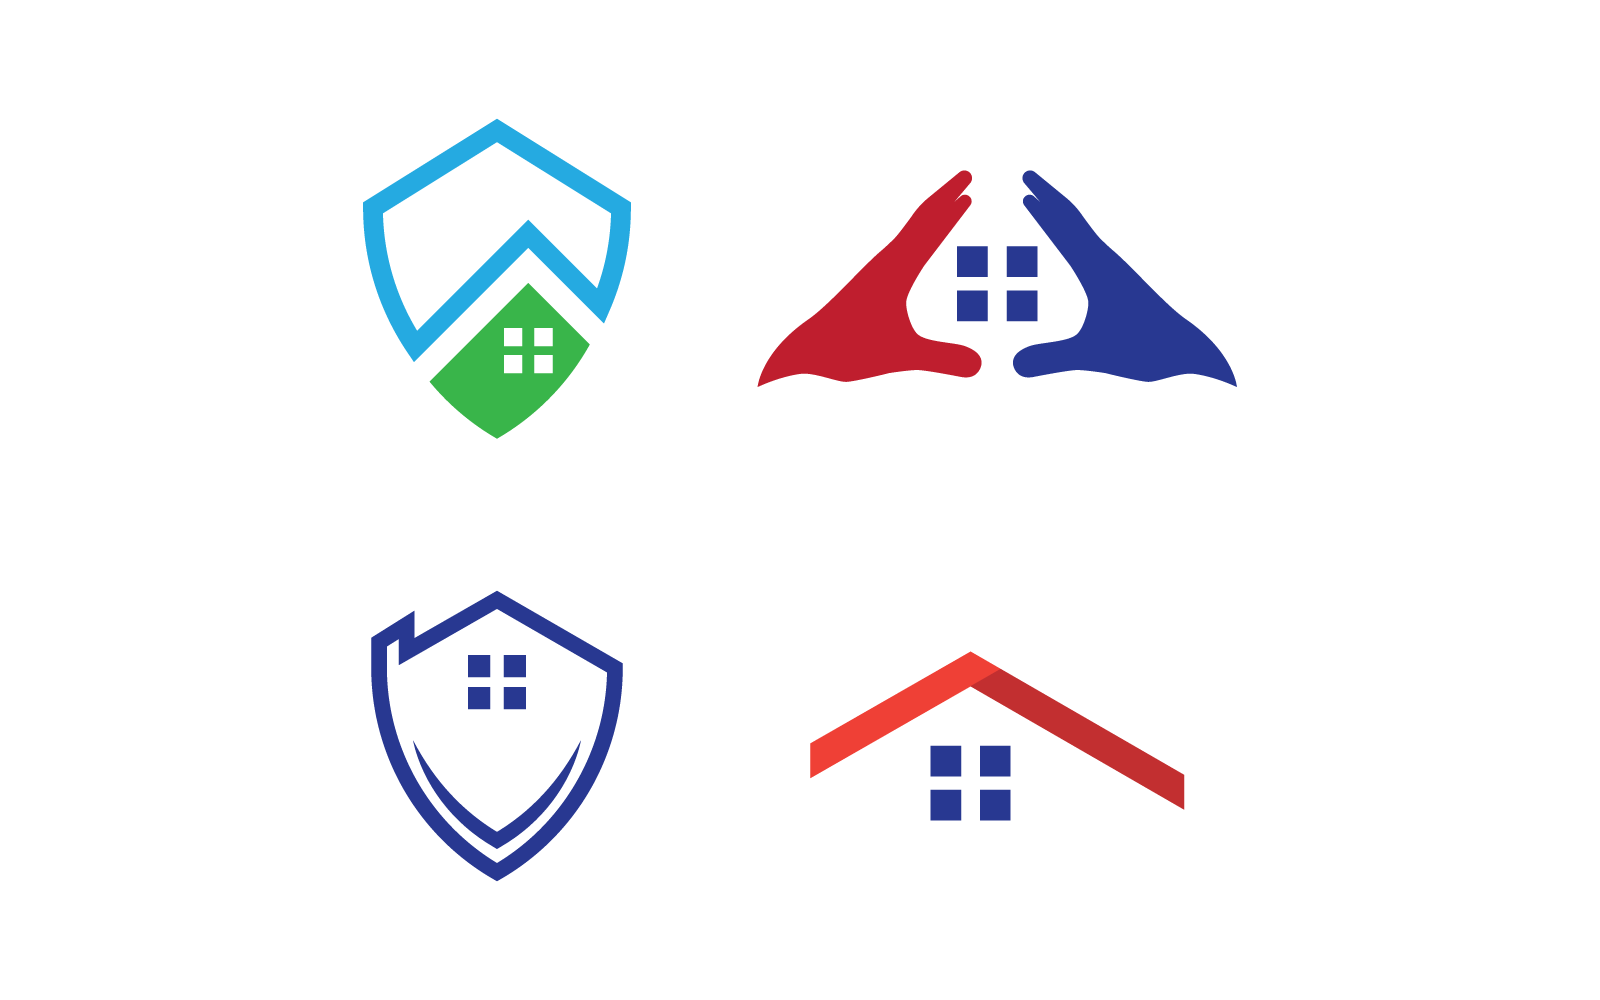 Plantilla vectorial del logotipo de protección del hogar y del escudo